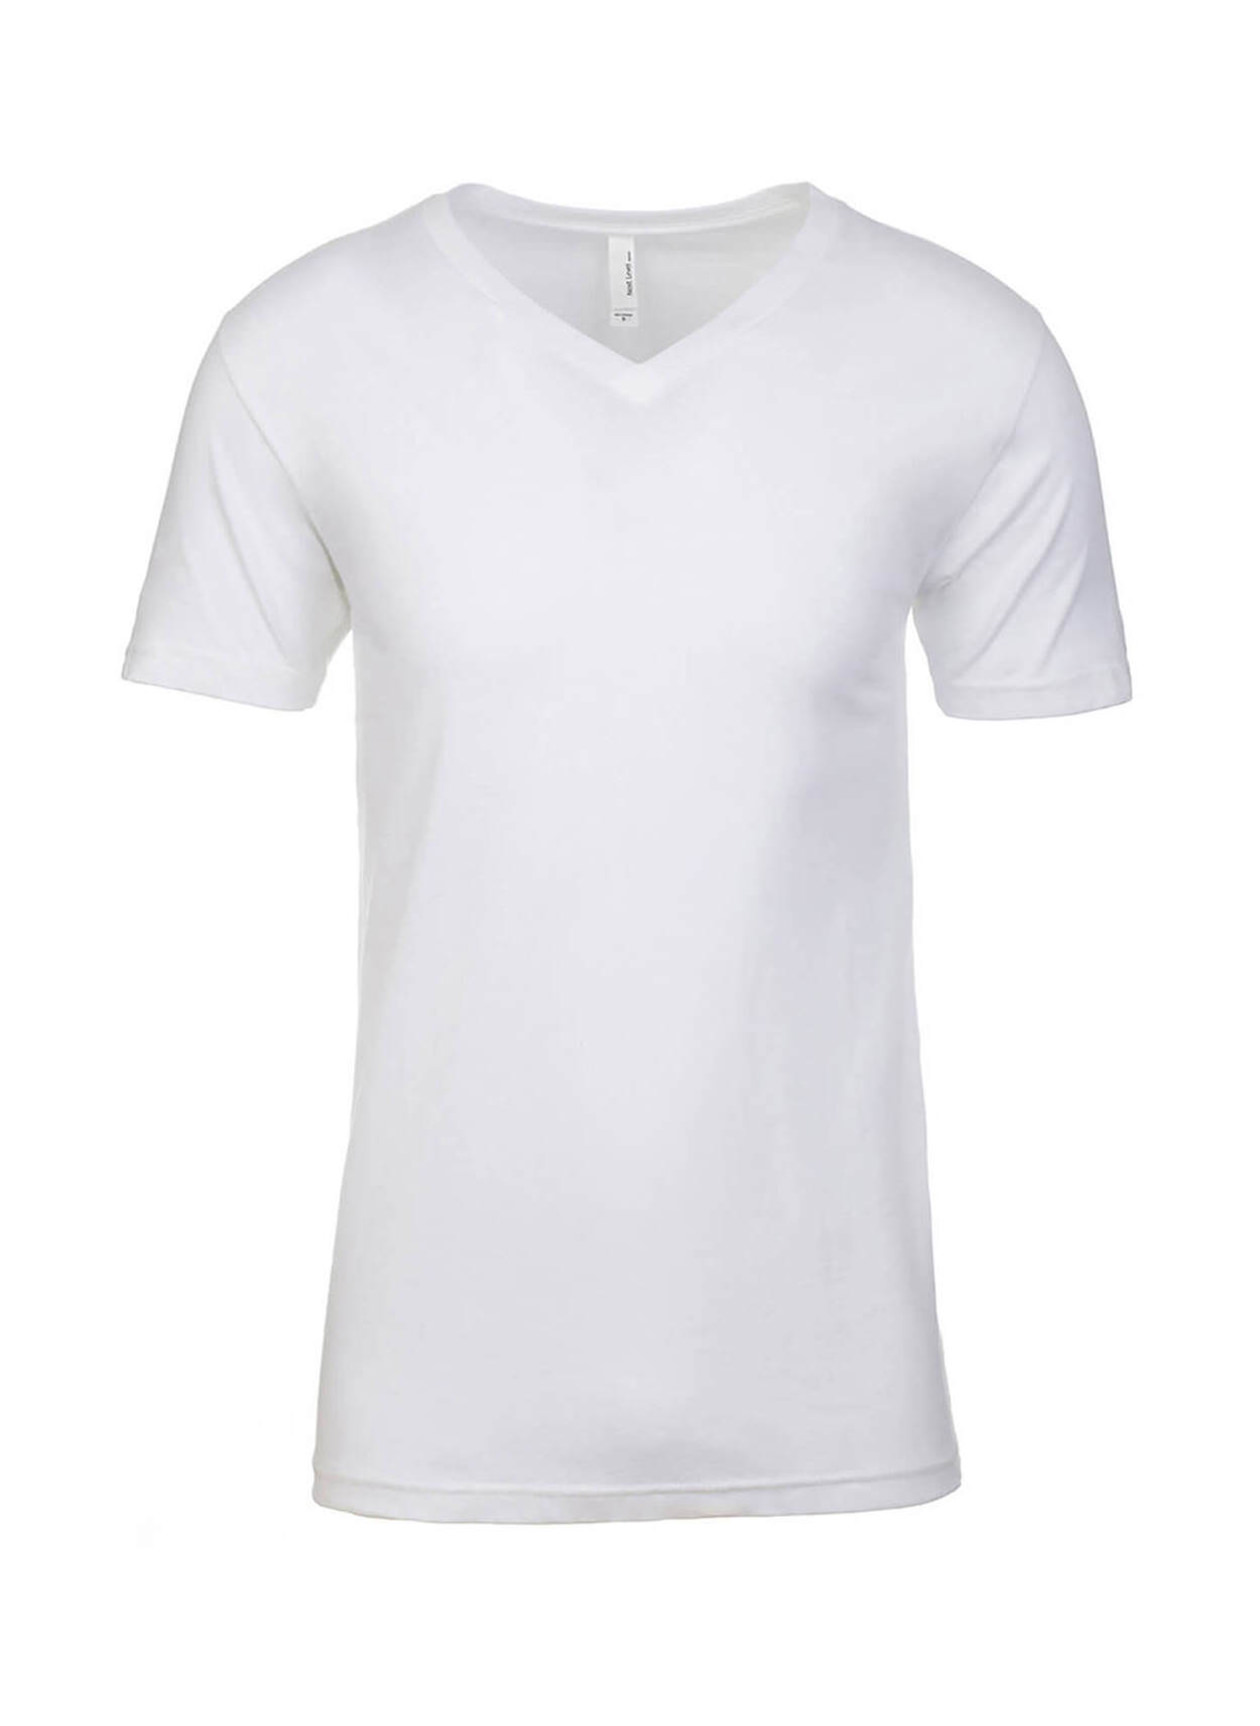 Next Level Men's White Cotton V-Neck T-Shirt